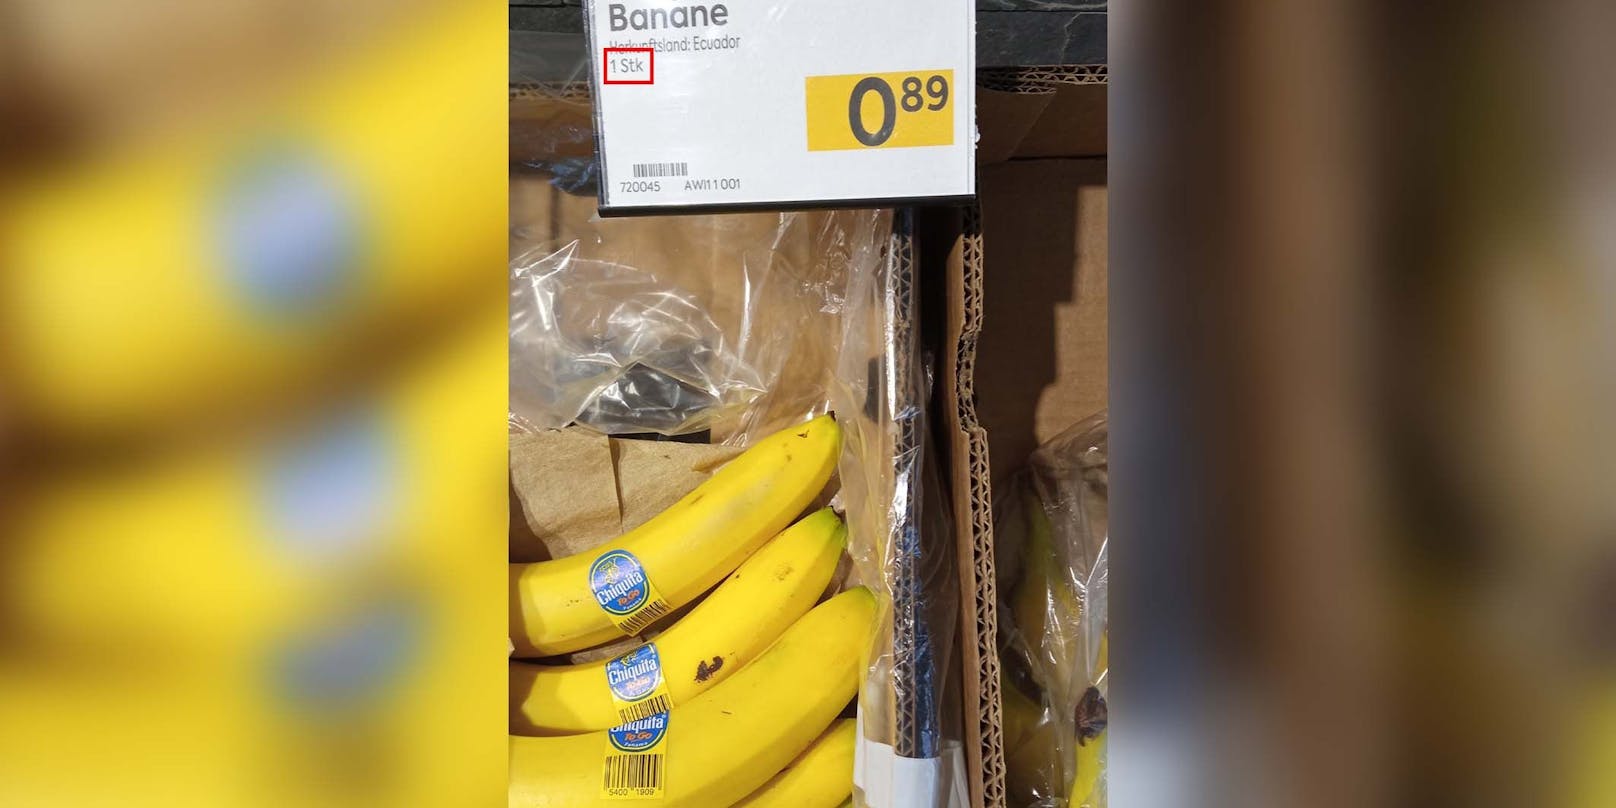 07.06.2023: Bananen-Revolution in Österreichs Supermärkten – <a target="_blank" data-li-document-ref="100274670" href="https://www.heute.at/g/bananen-revolution-in-oesterreichs-supermaerkten-100274670">Weiterlesen &gt;&gt;&gt;</a>